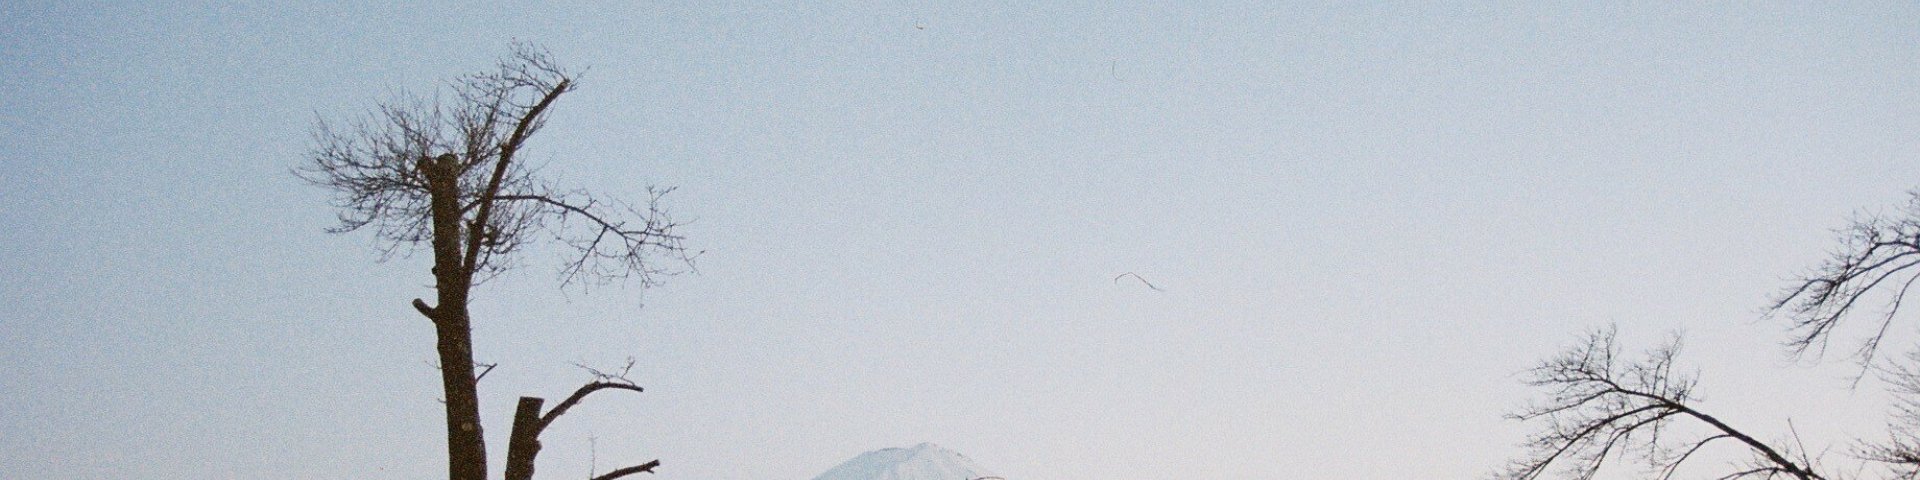 Fuji mäge vaatamas